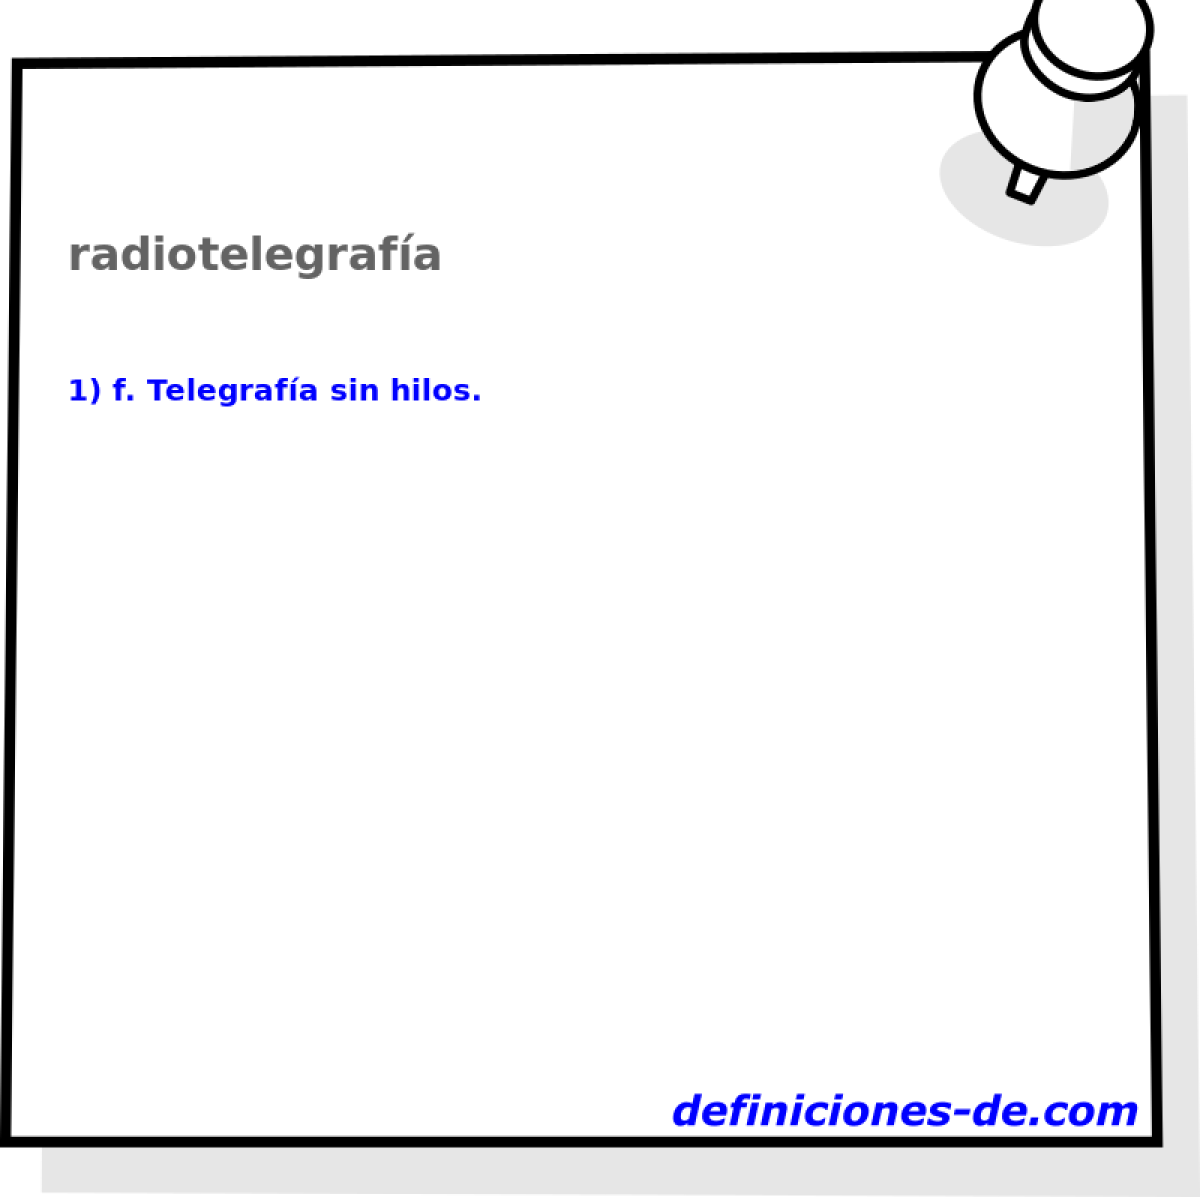 radiotelegrafa 